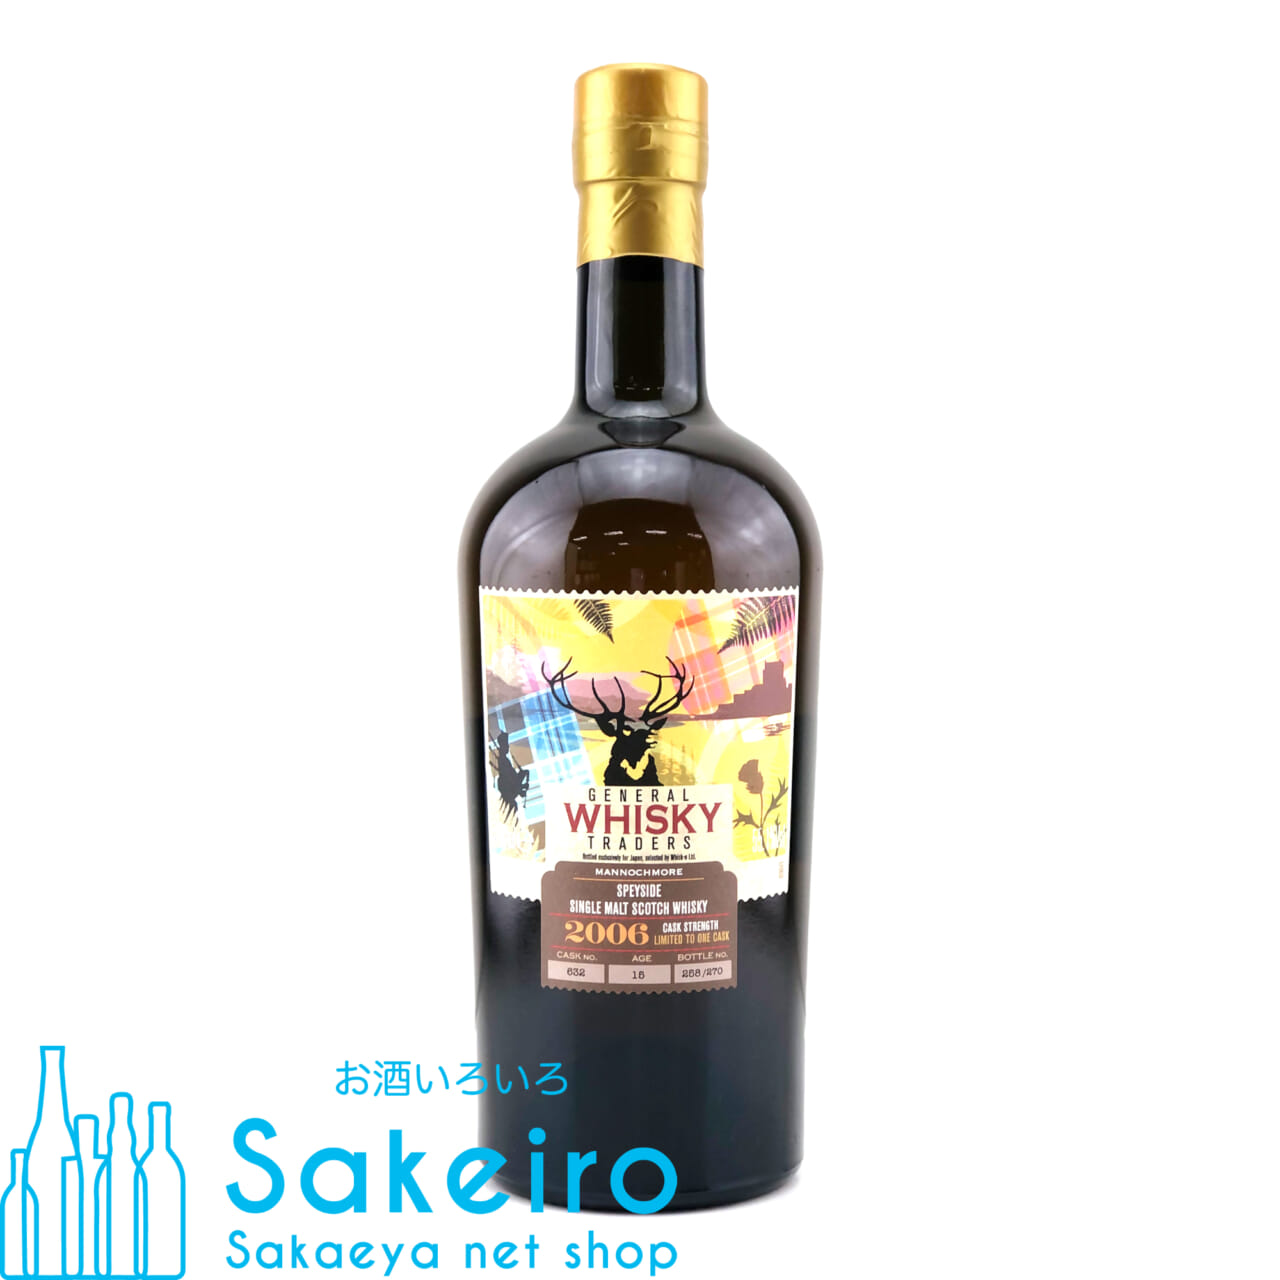 マノックモア 2006 15年 ホグスヘッド 55.1% 700ml ジェネラル ウイスキー トレーダーズ お酒いろいろ Sakeiro  -Sakaeya net shop-